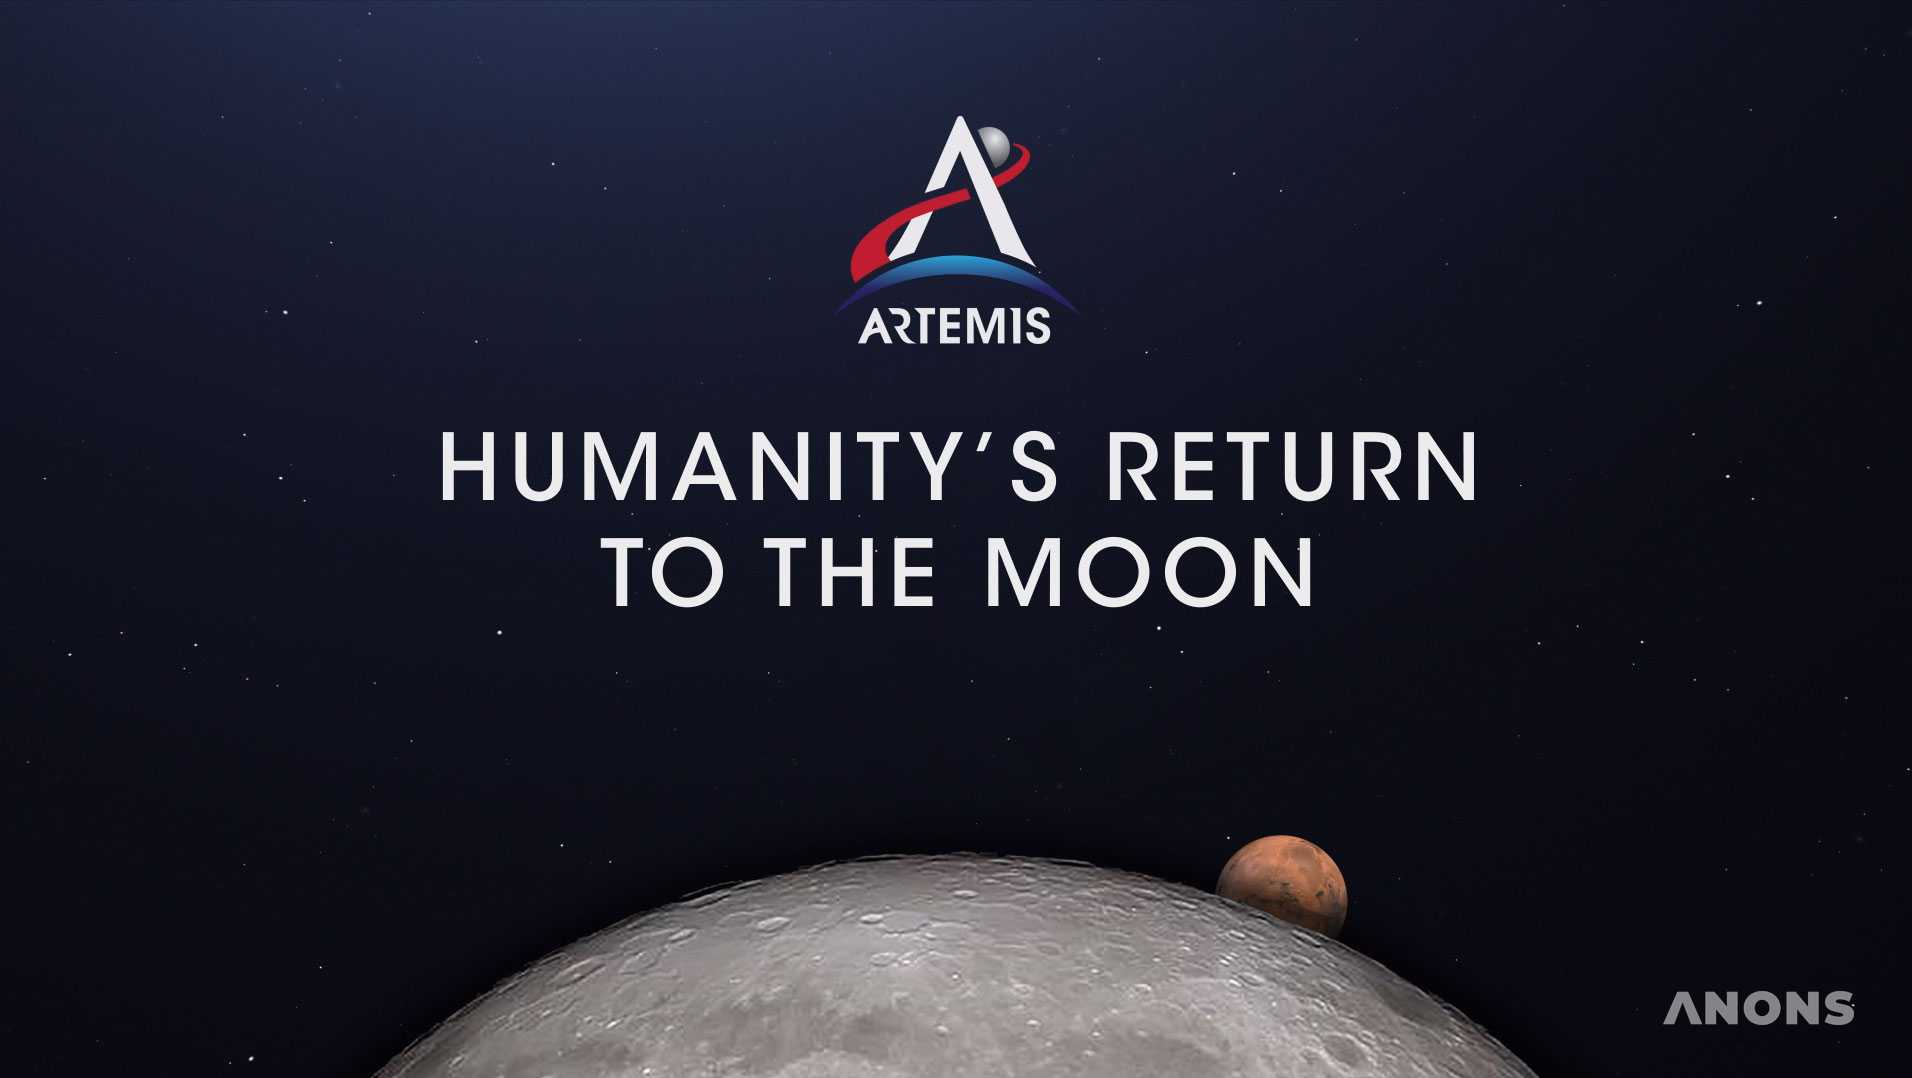 NASA представило новый проект - Программу Артемиды